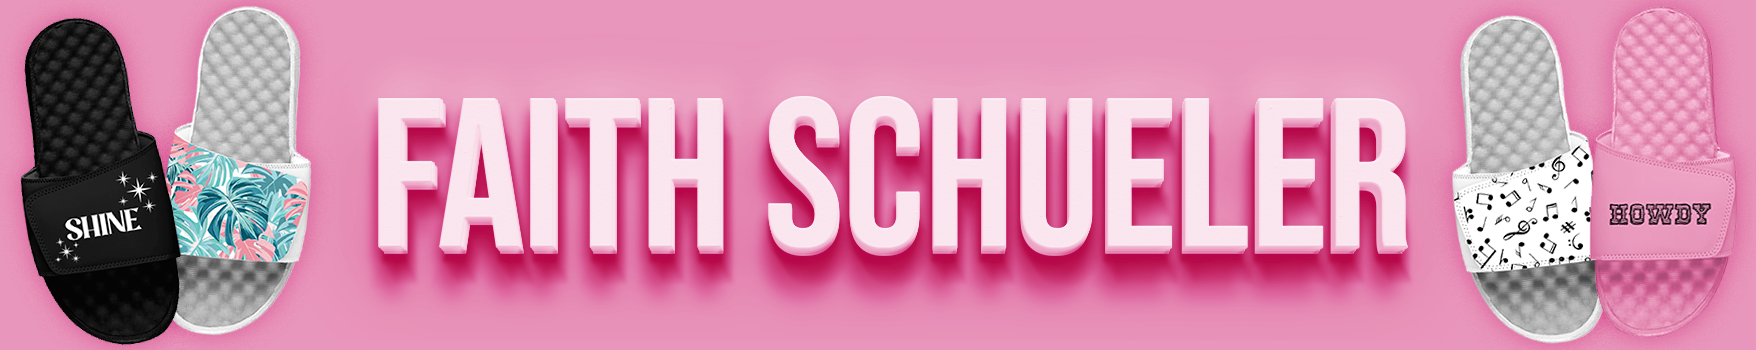 Faith Schueler